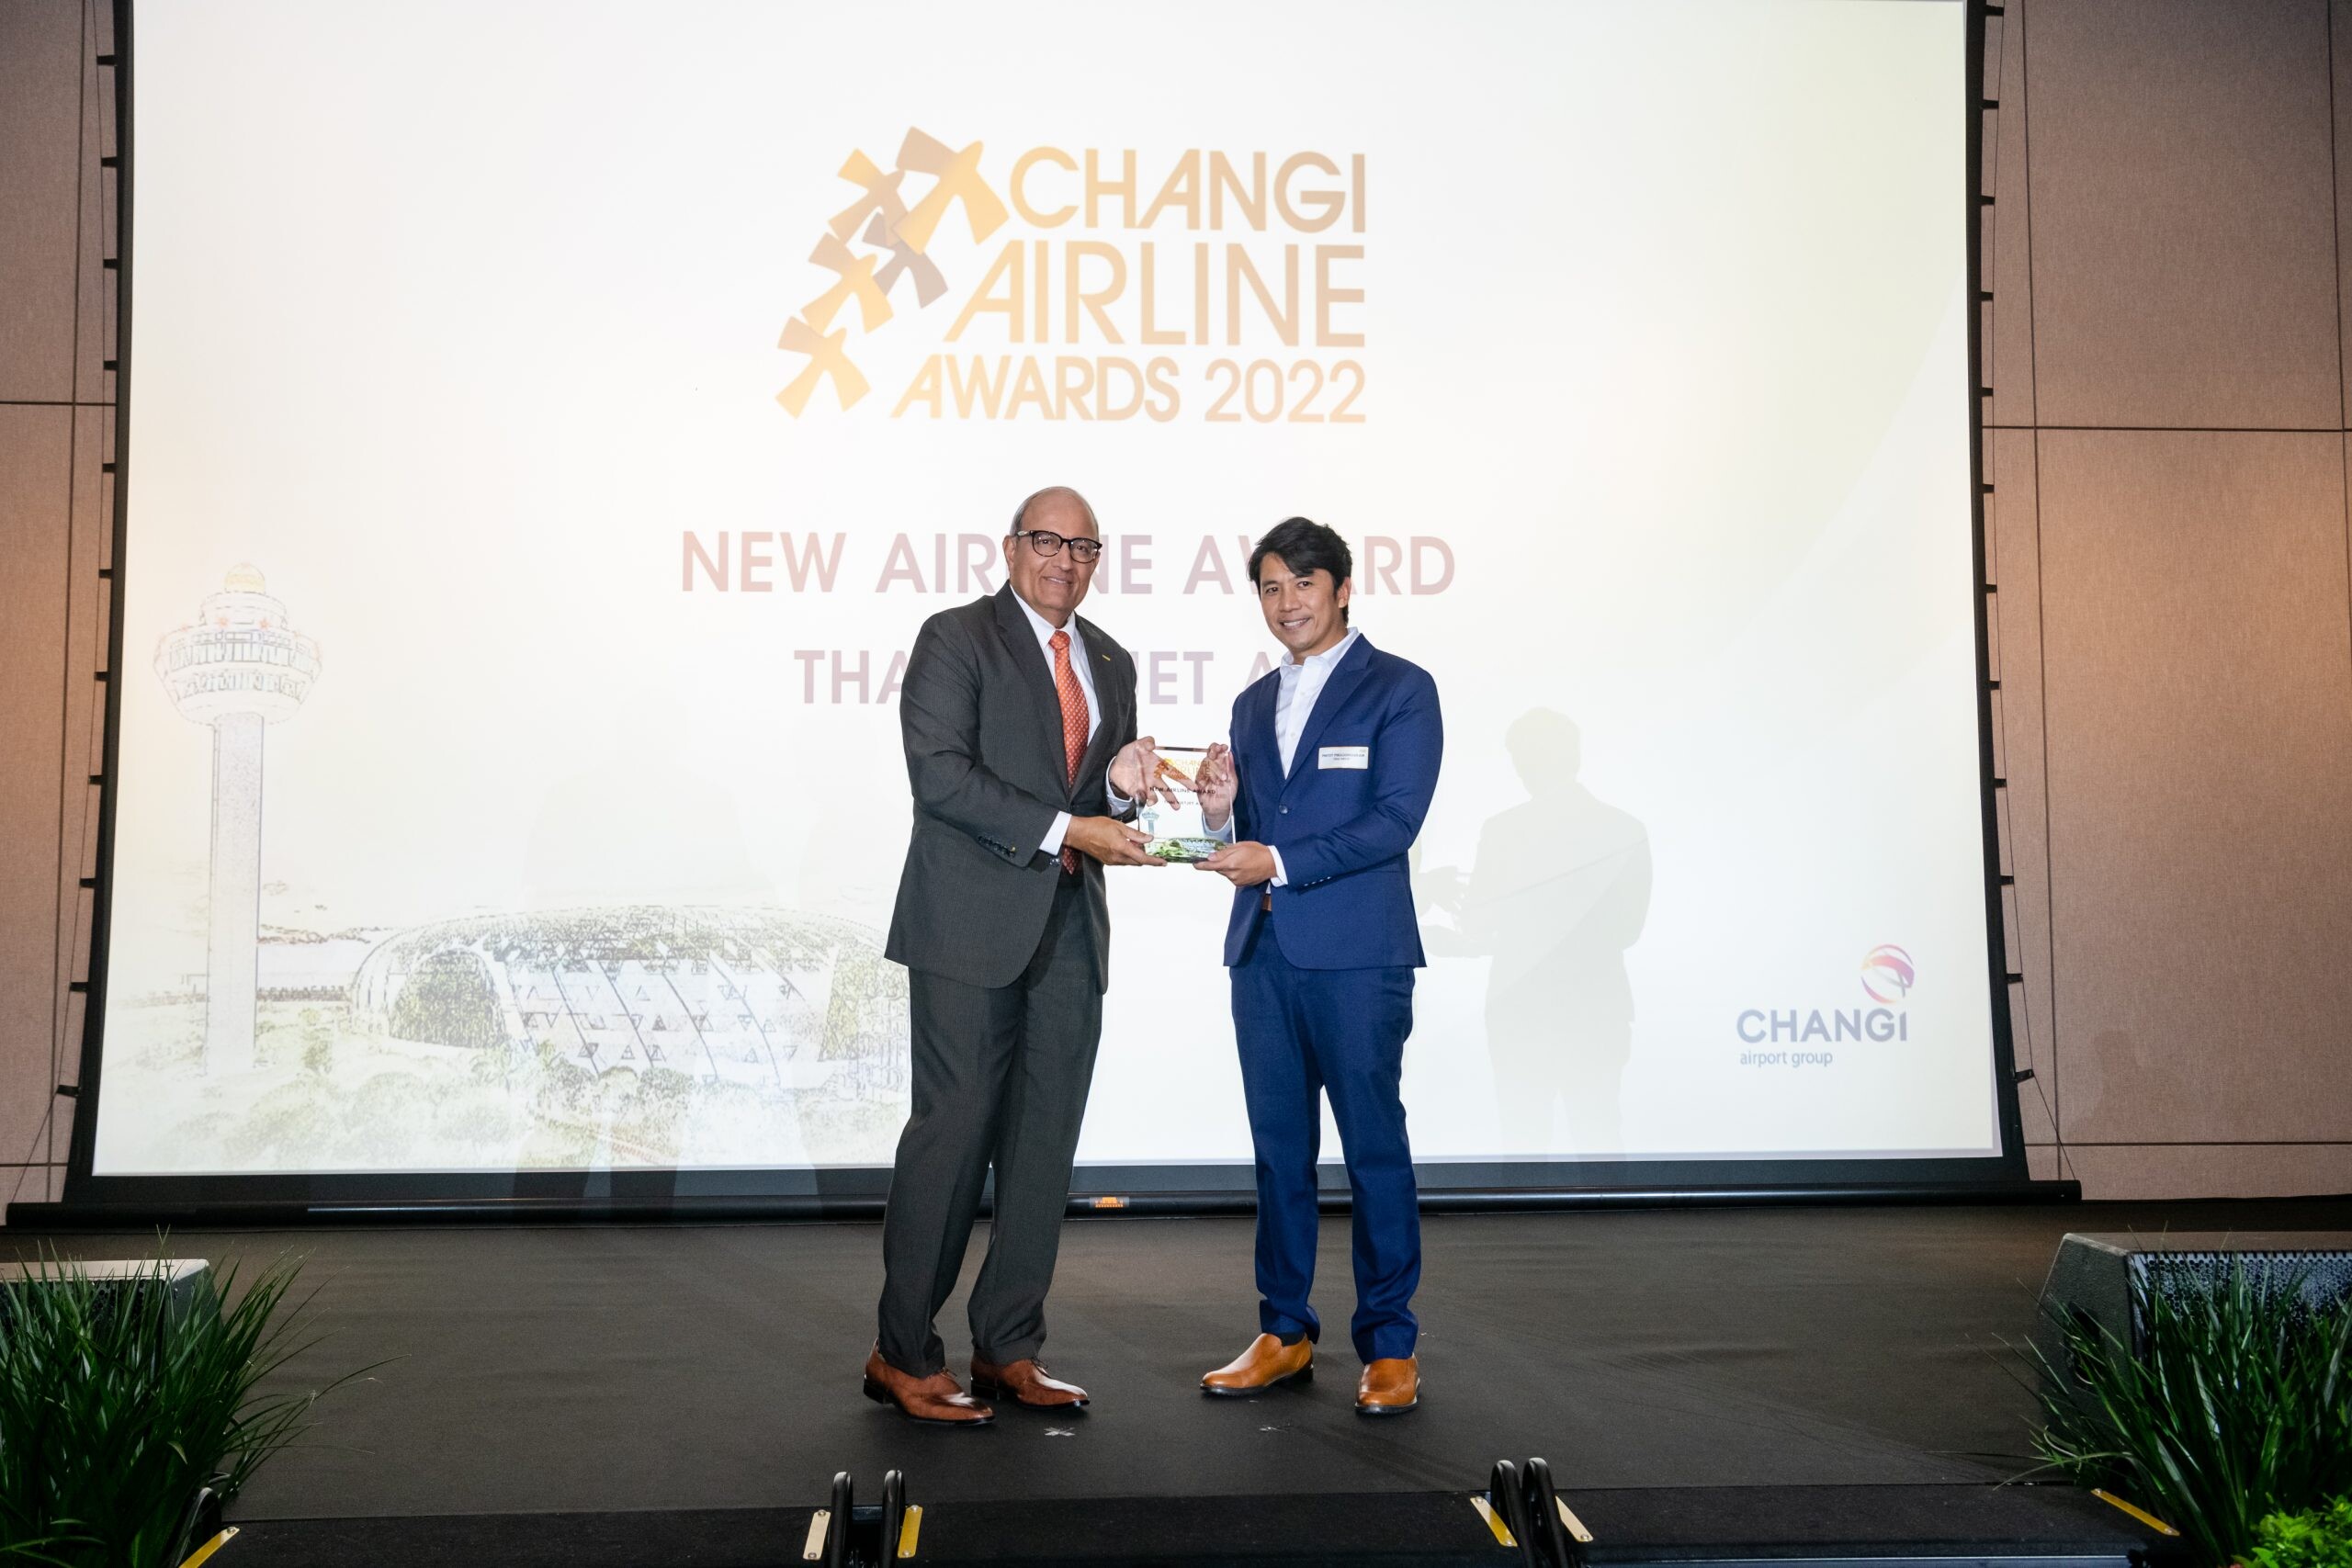 ไทยเวียตเจ็ทคว้ารางวัล "New Airline Award" จากสนามบินชางงีสิงคโปร์